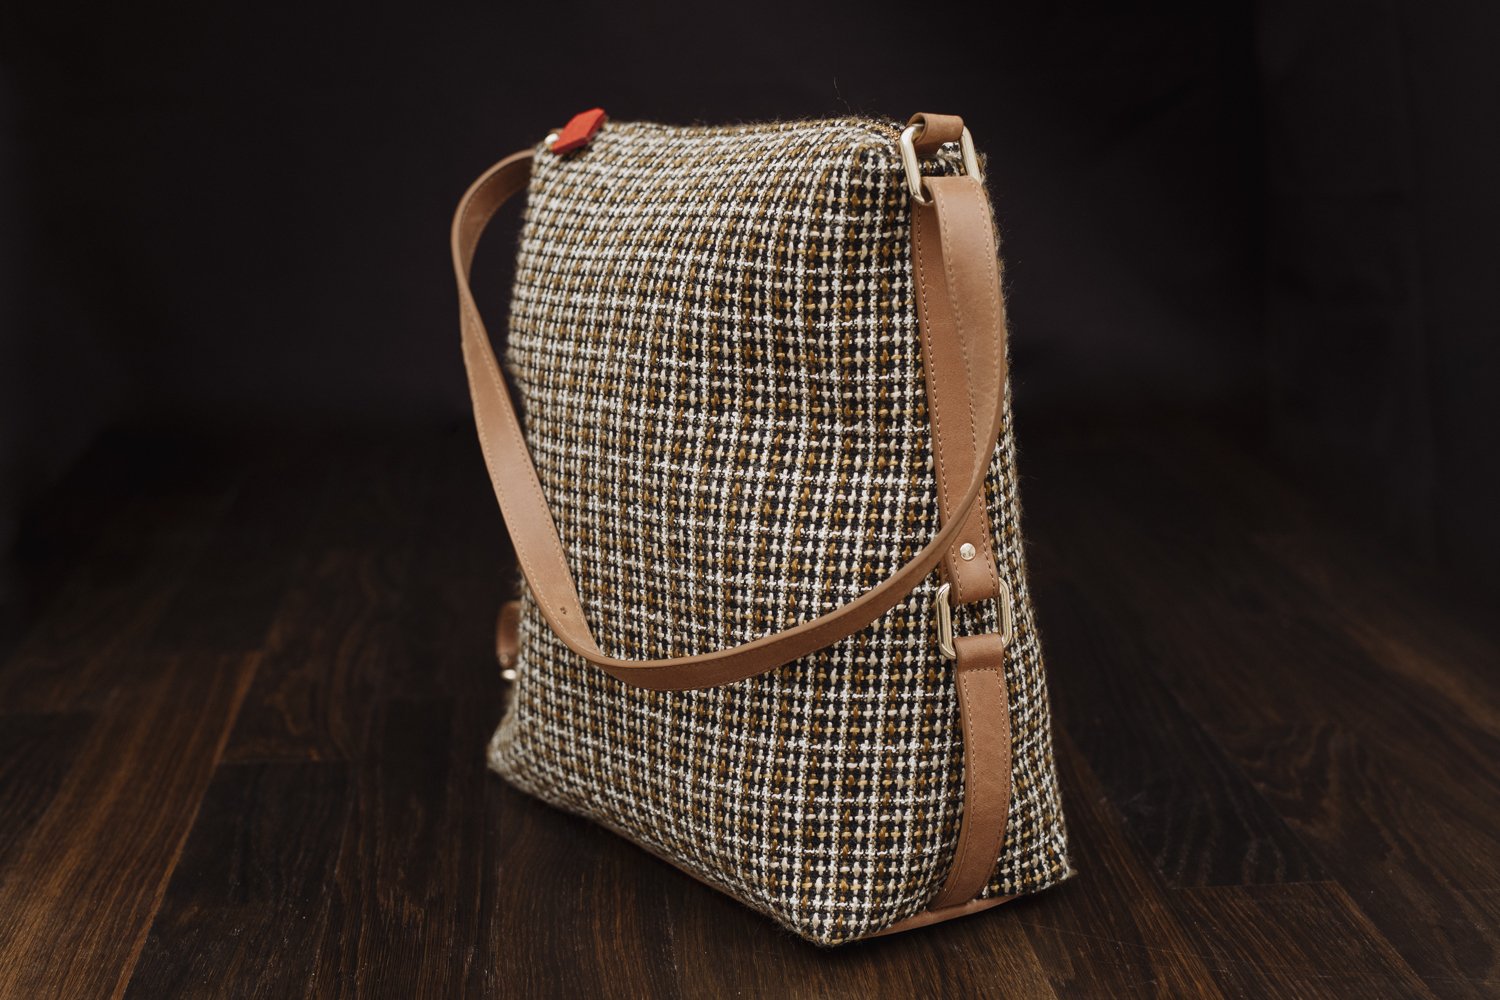 Versatile & Stylish Vintage Bucket Bag Single Shoulder Bag